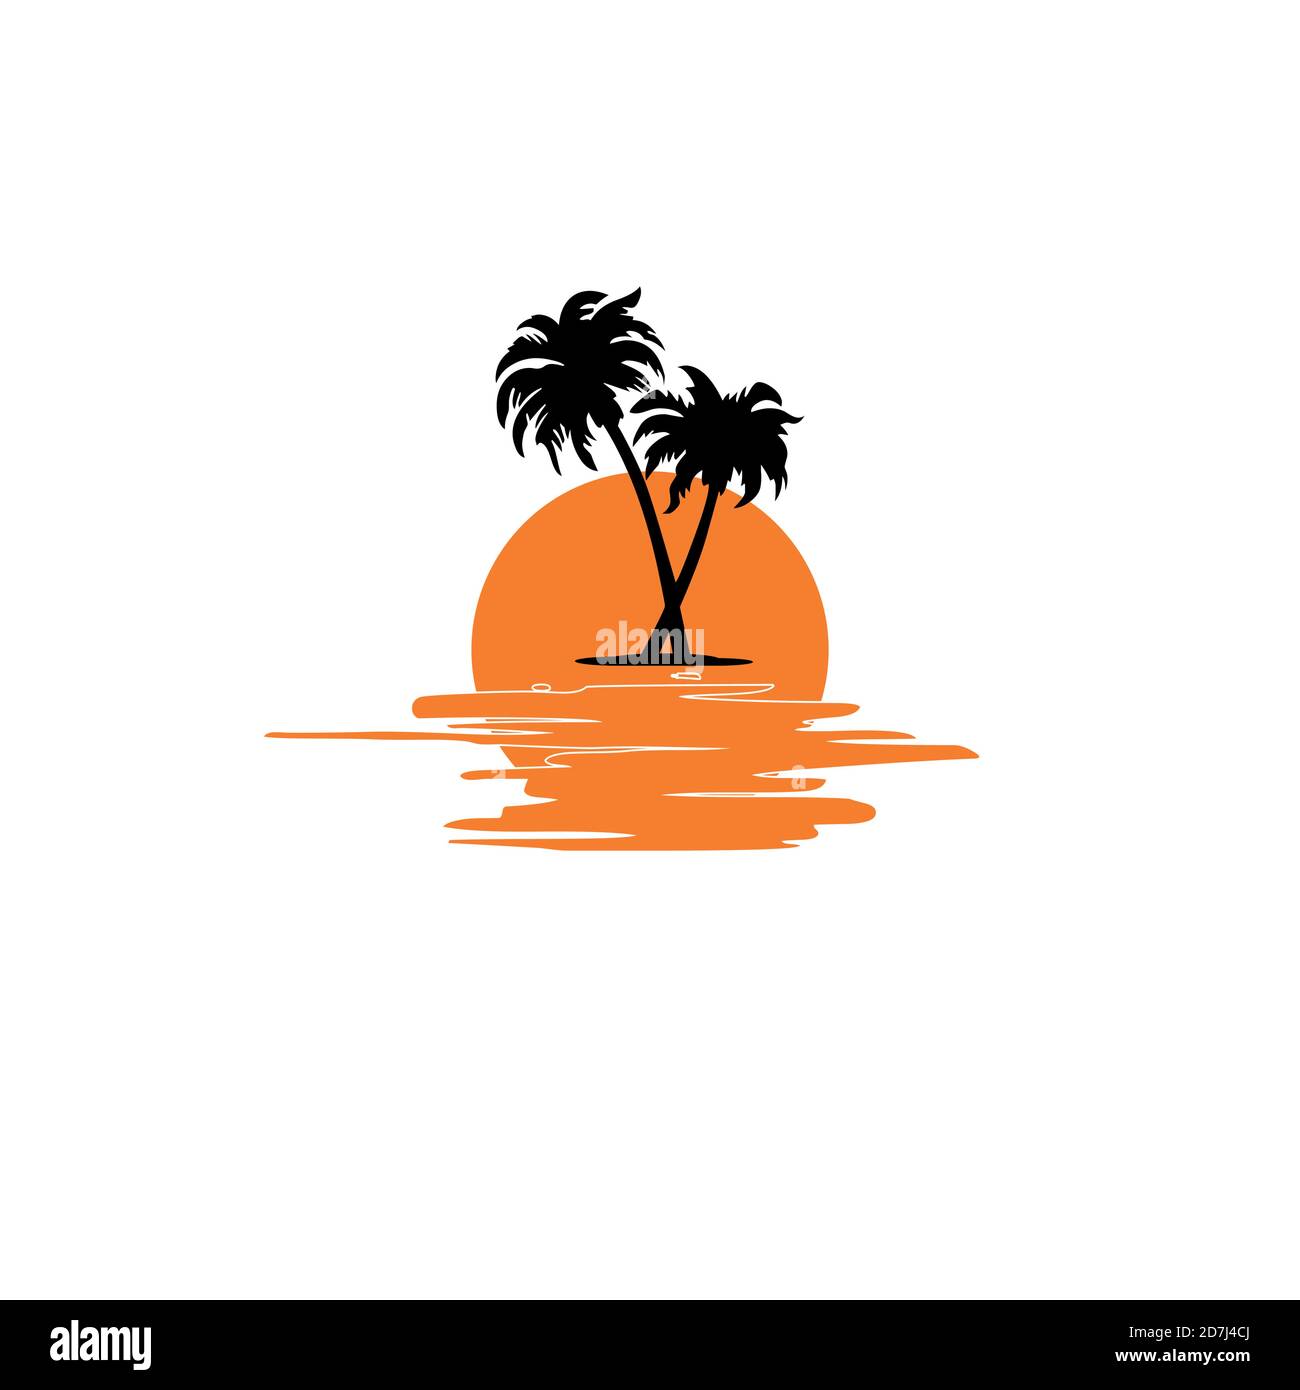 Logo coucher de soleil Banque d'images vectorielles - Alamy